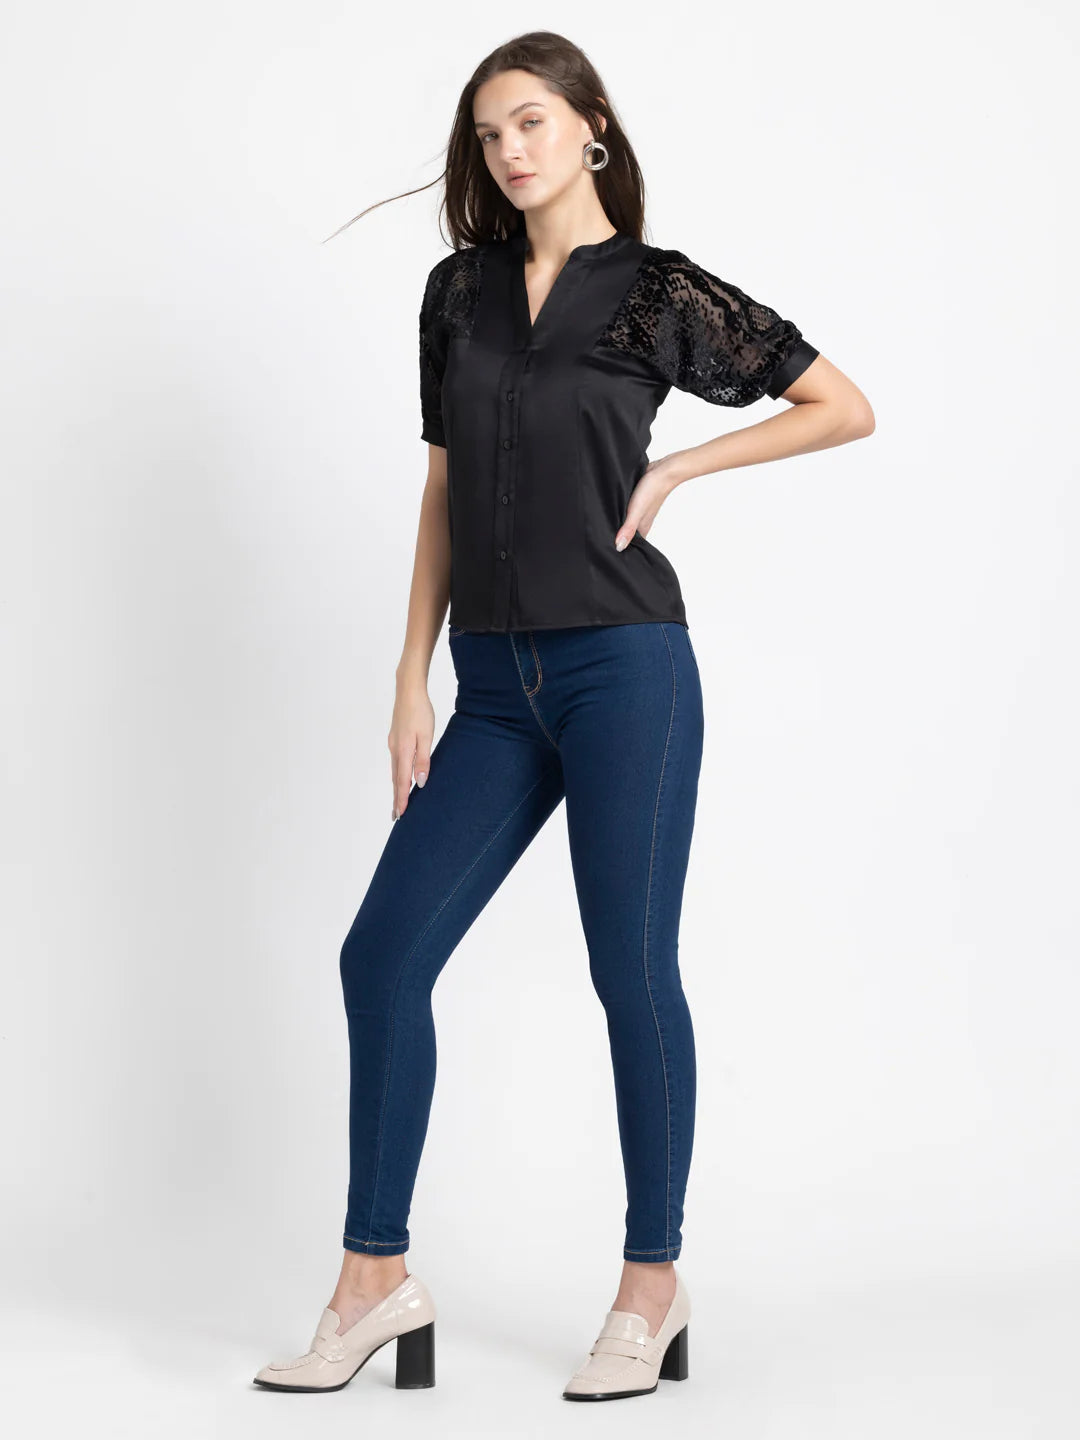 Black Short Sleeve Shirt for Women | Versatile Black Short Sleeve Shirt